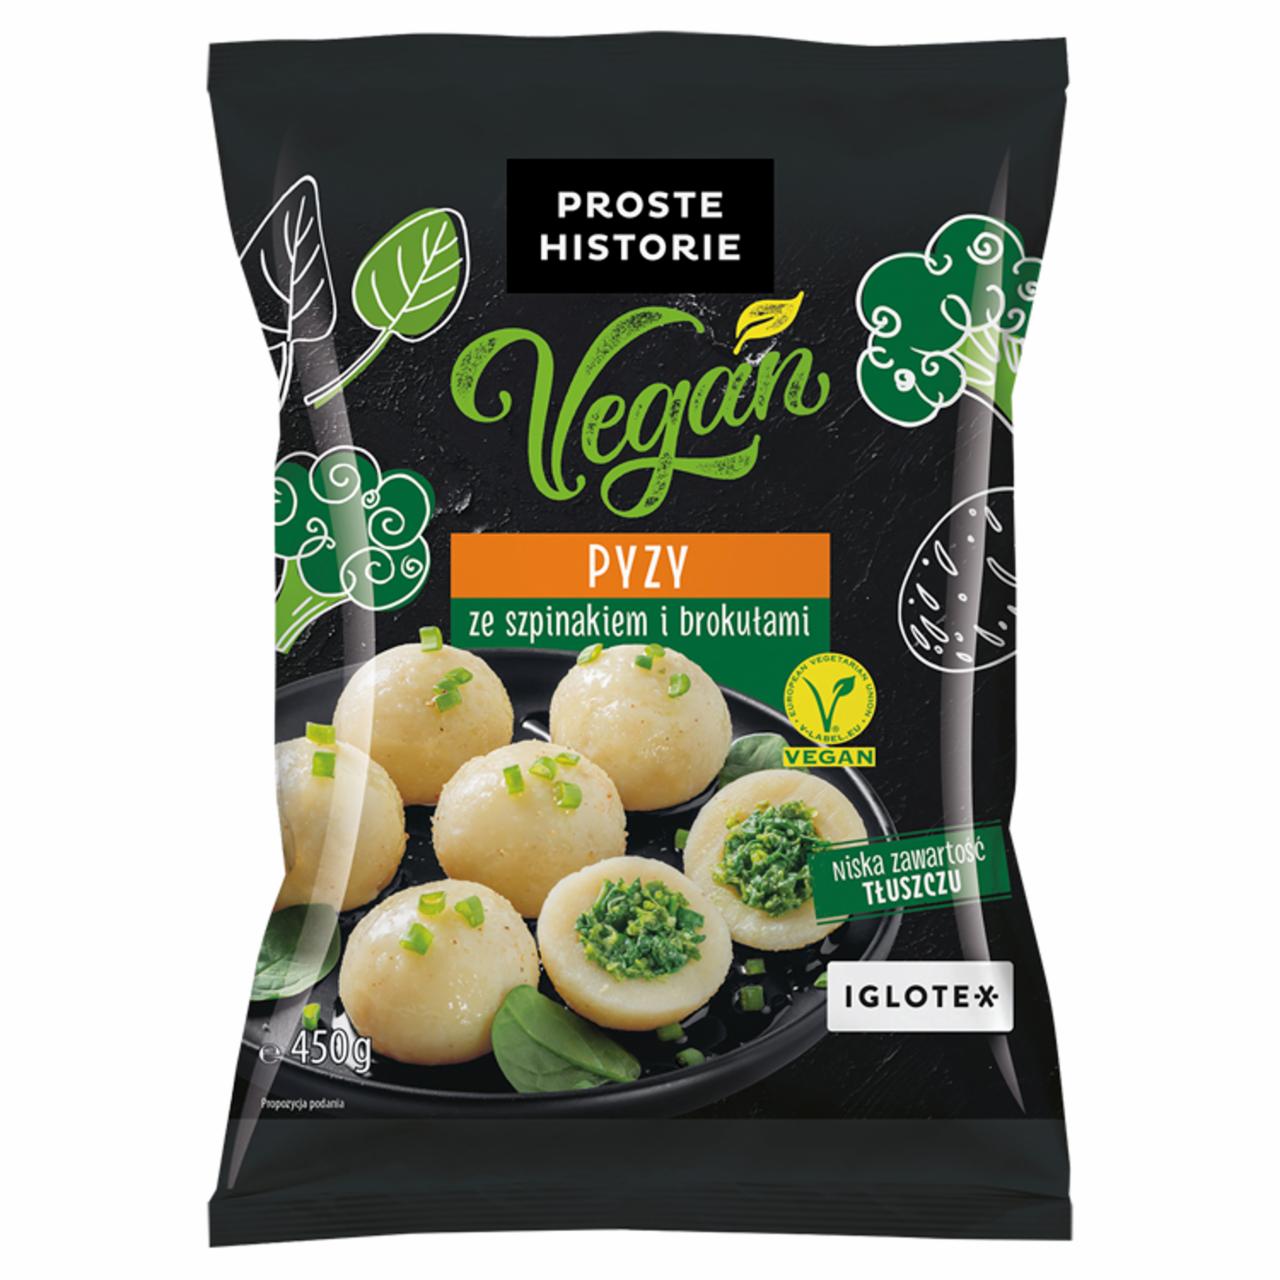 Zdjęcia - Vegan Pyzy ze szpinakiem i brokułami Proste Historie